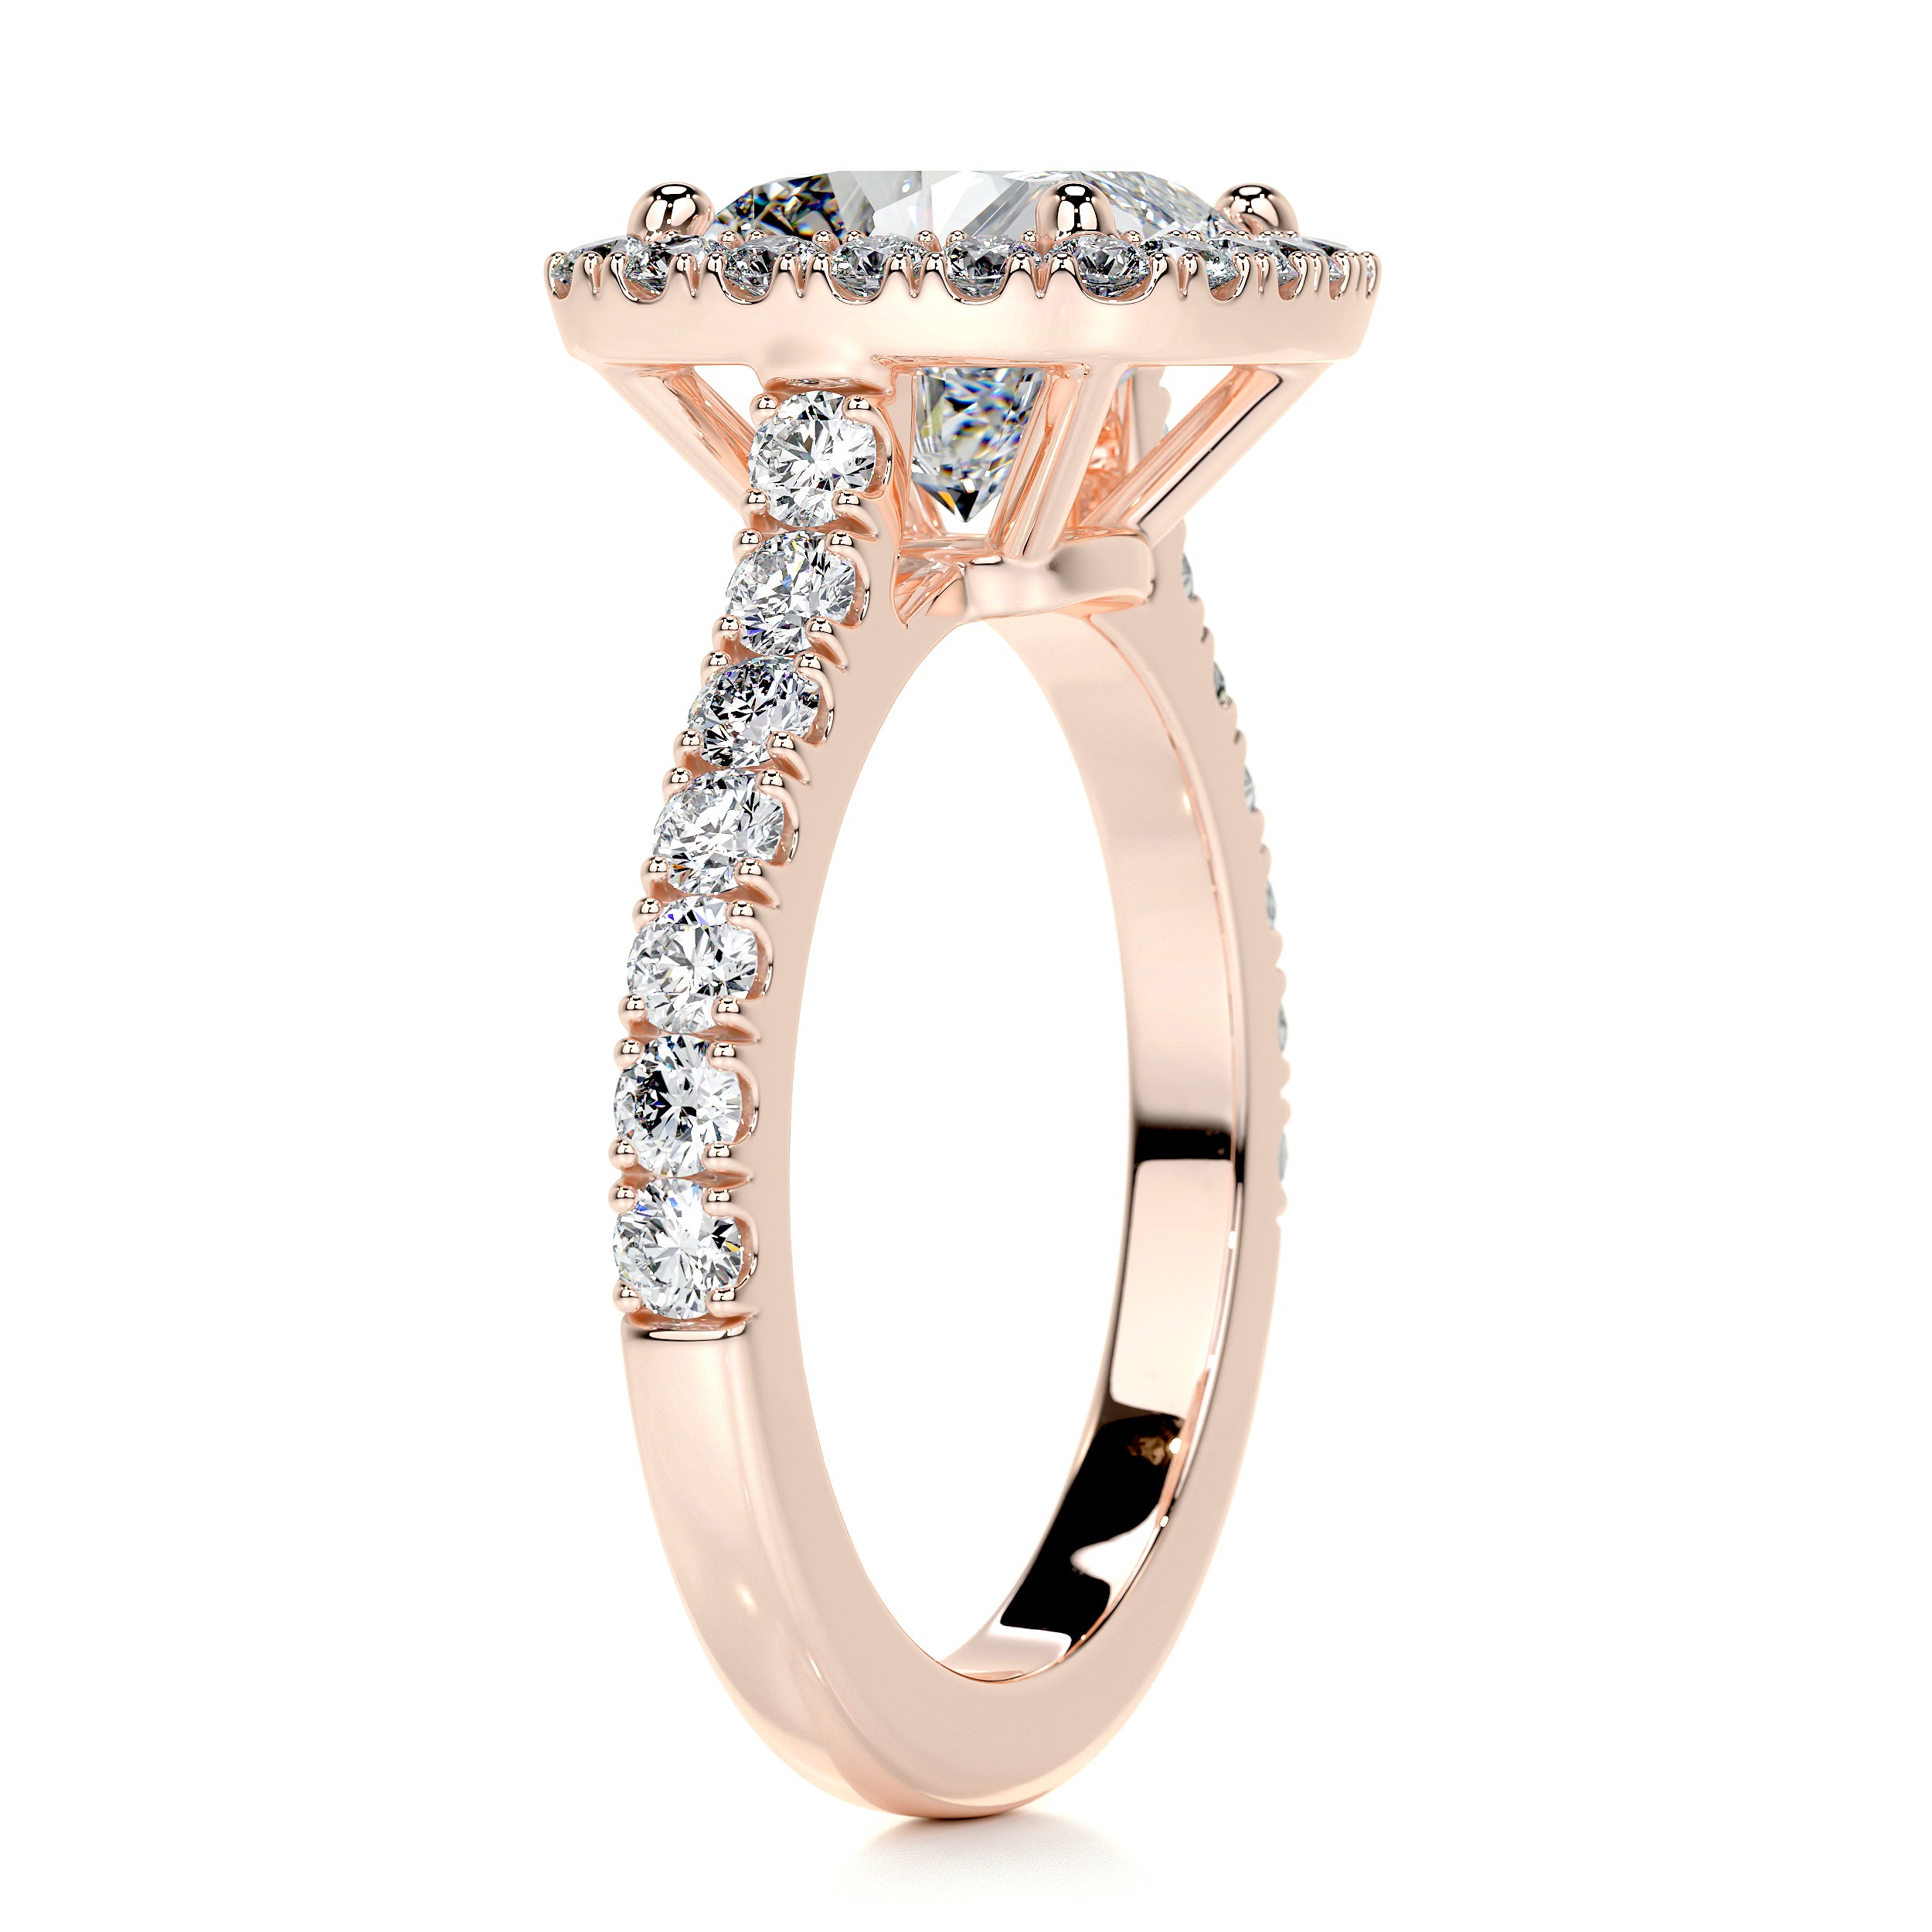 Celeste Moissanite & Diamonds Ring   (3 Carat) -14K Rose Gold